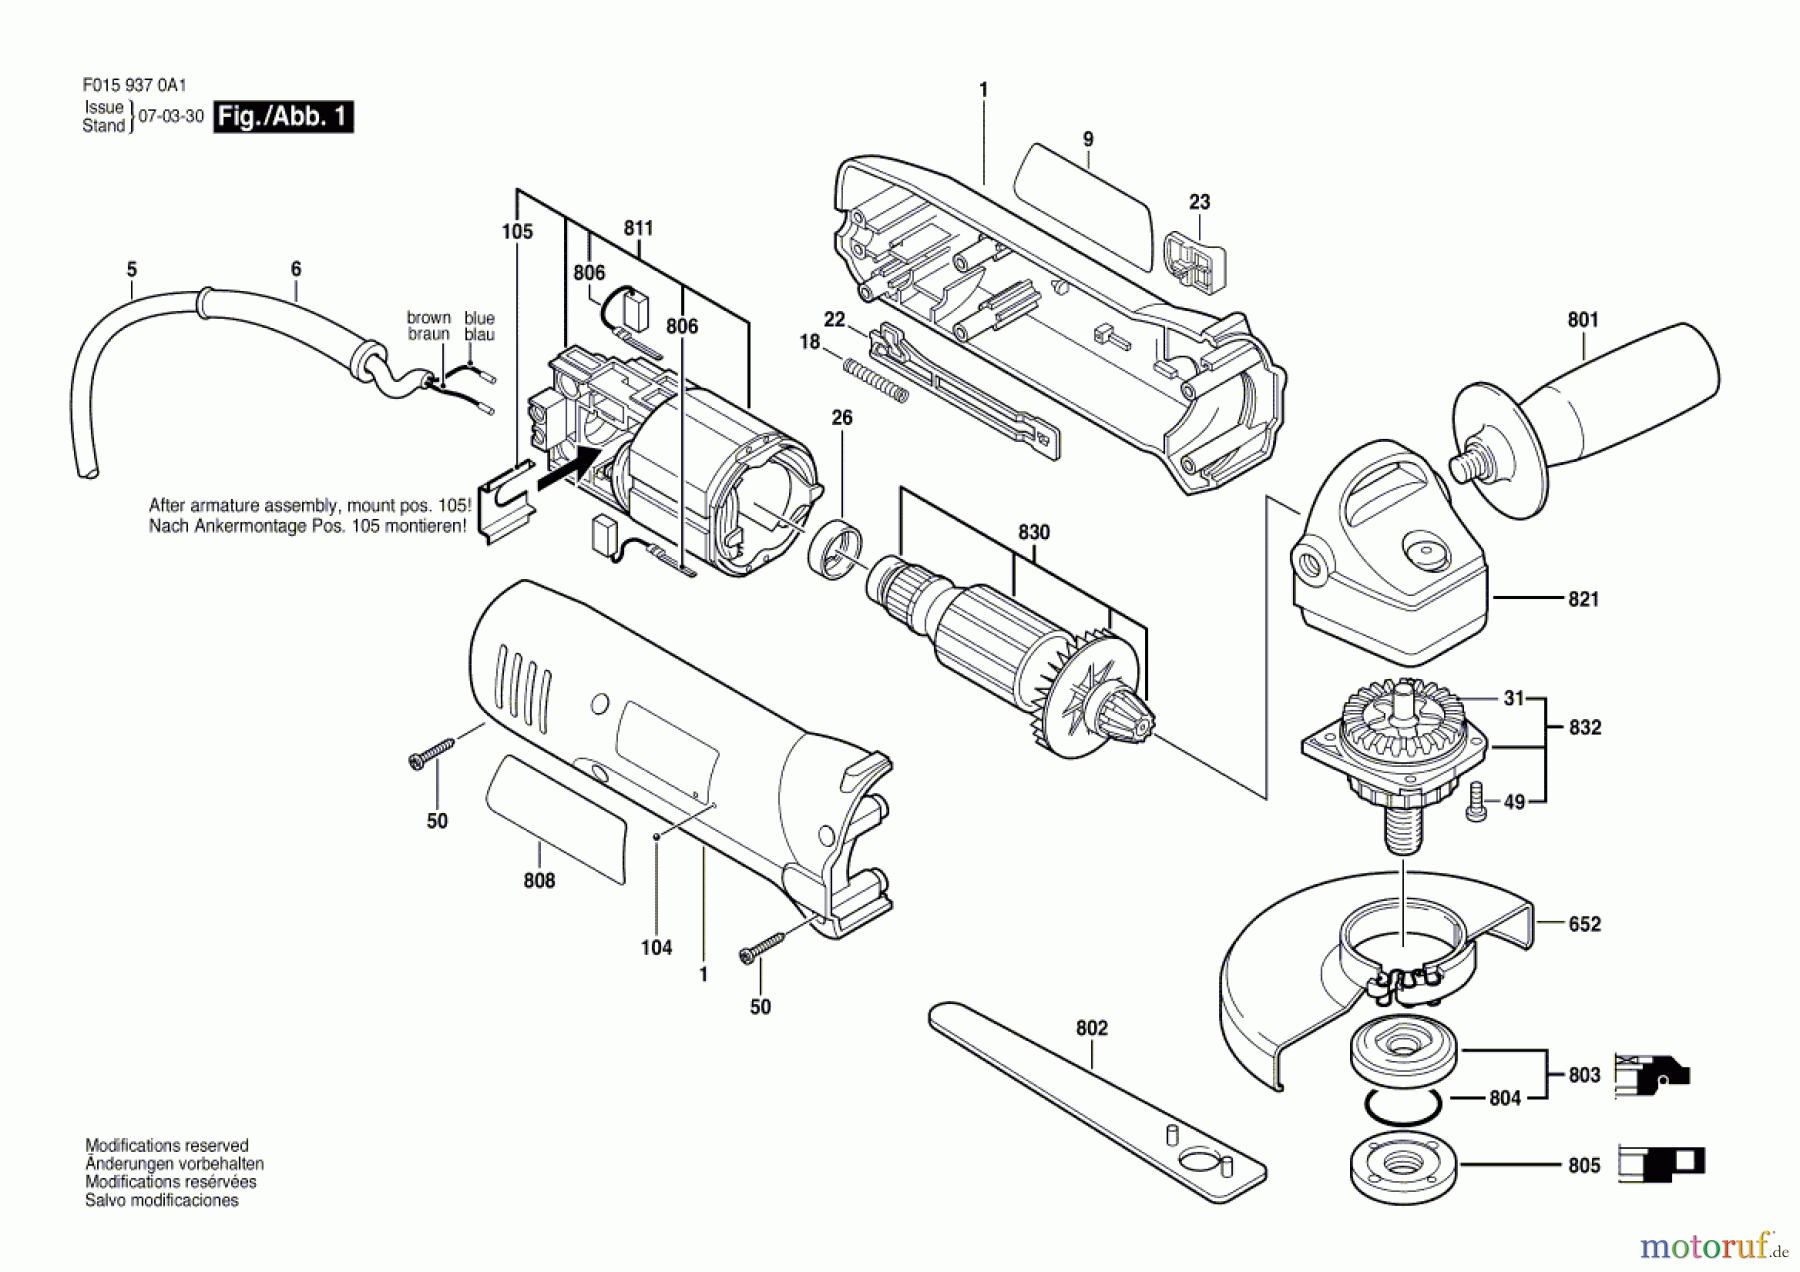  Bosch Werkzeug Winkelschleifer 9370 Seite 1